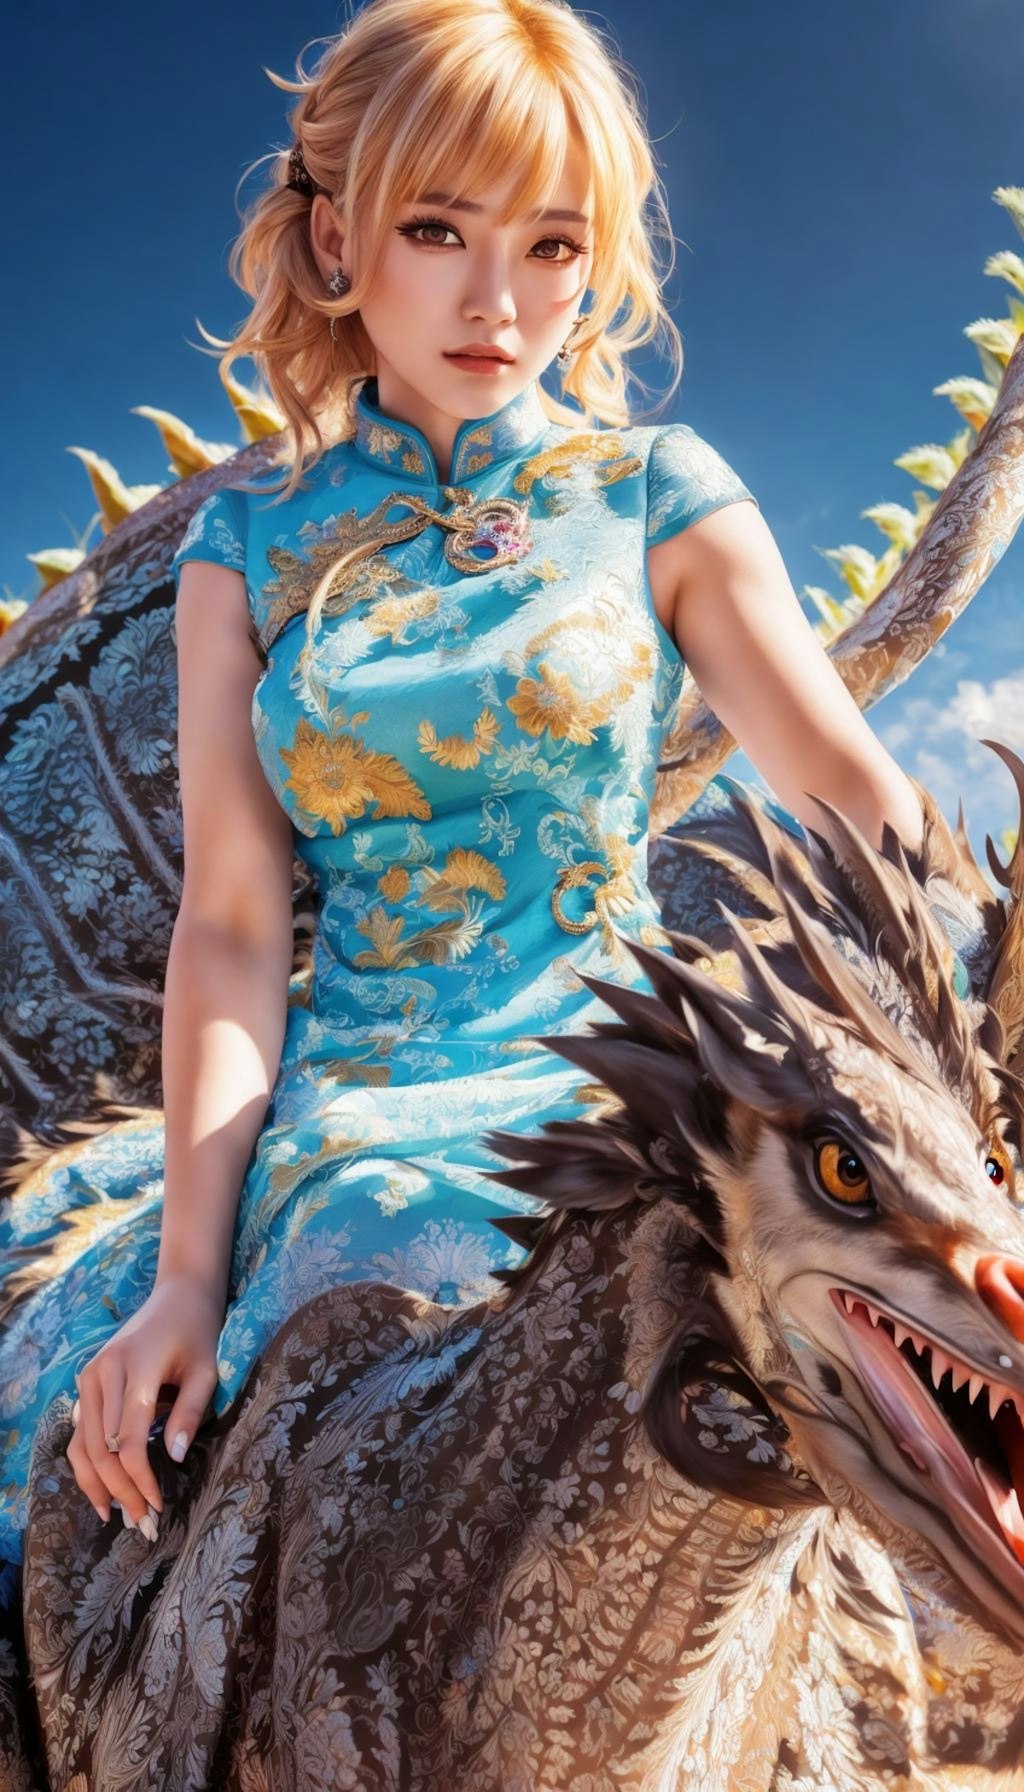 Ride the Dragon